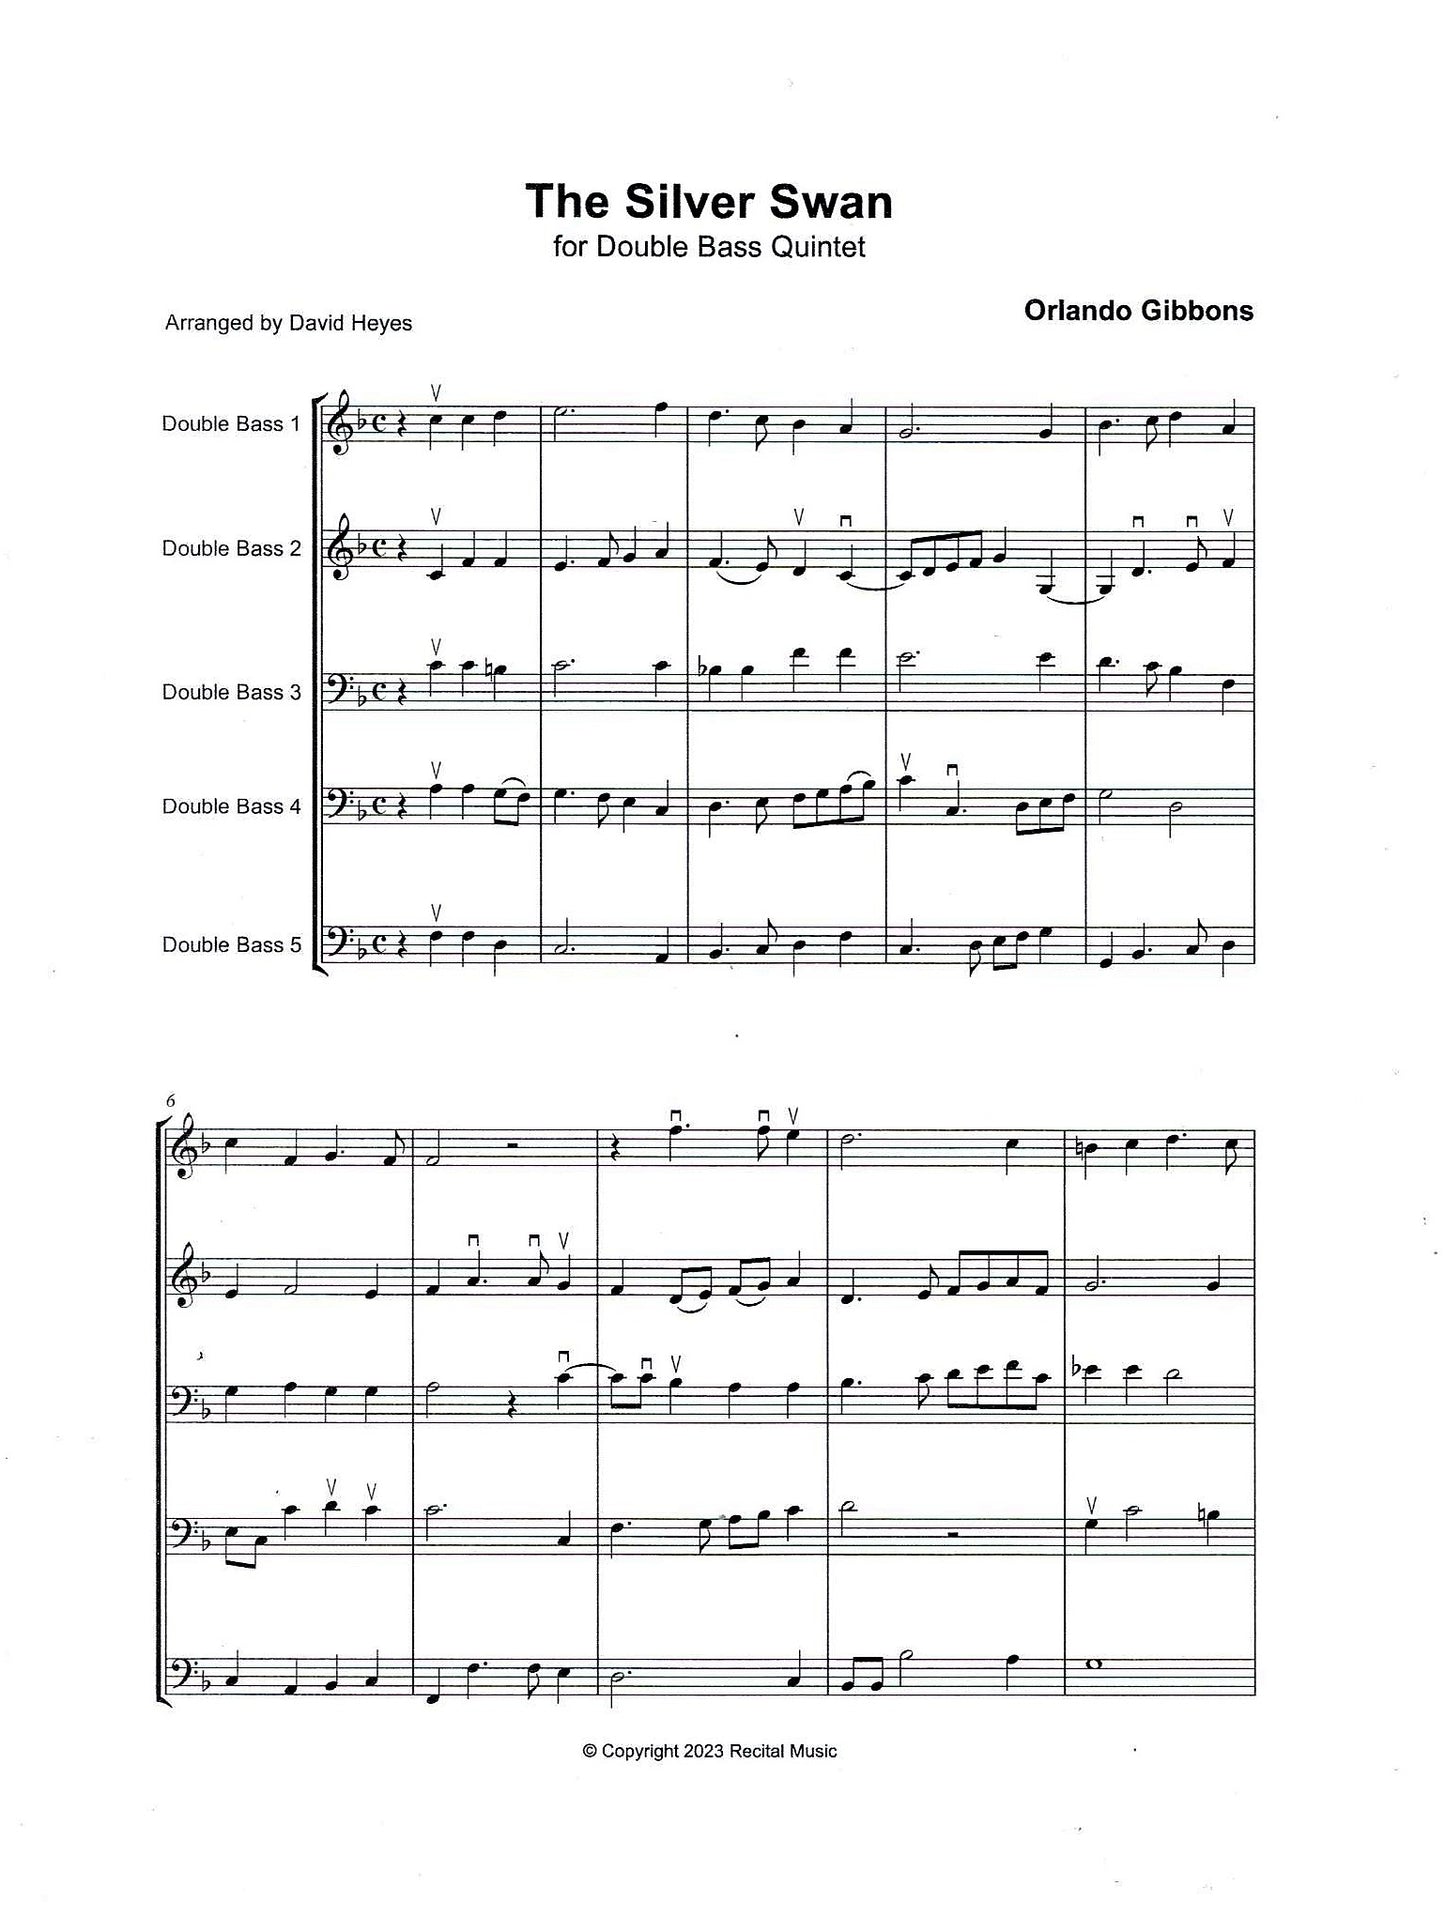 Bass Quintets Book 1 for double bass quintet (arr. David Heyes)